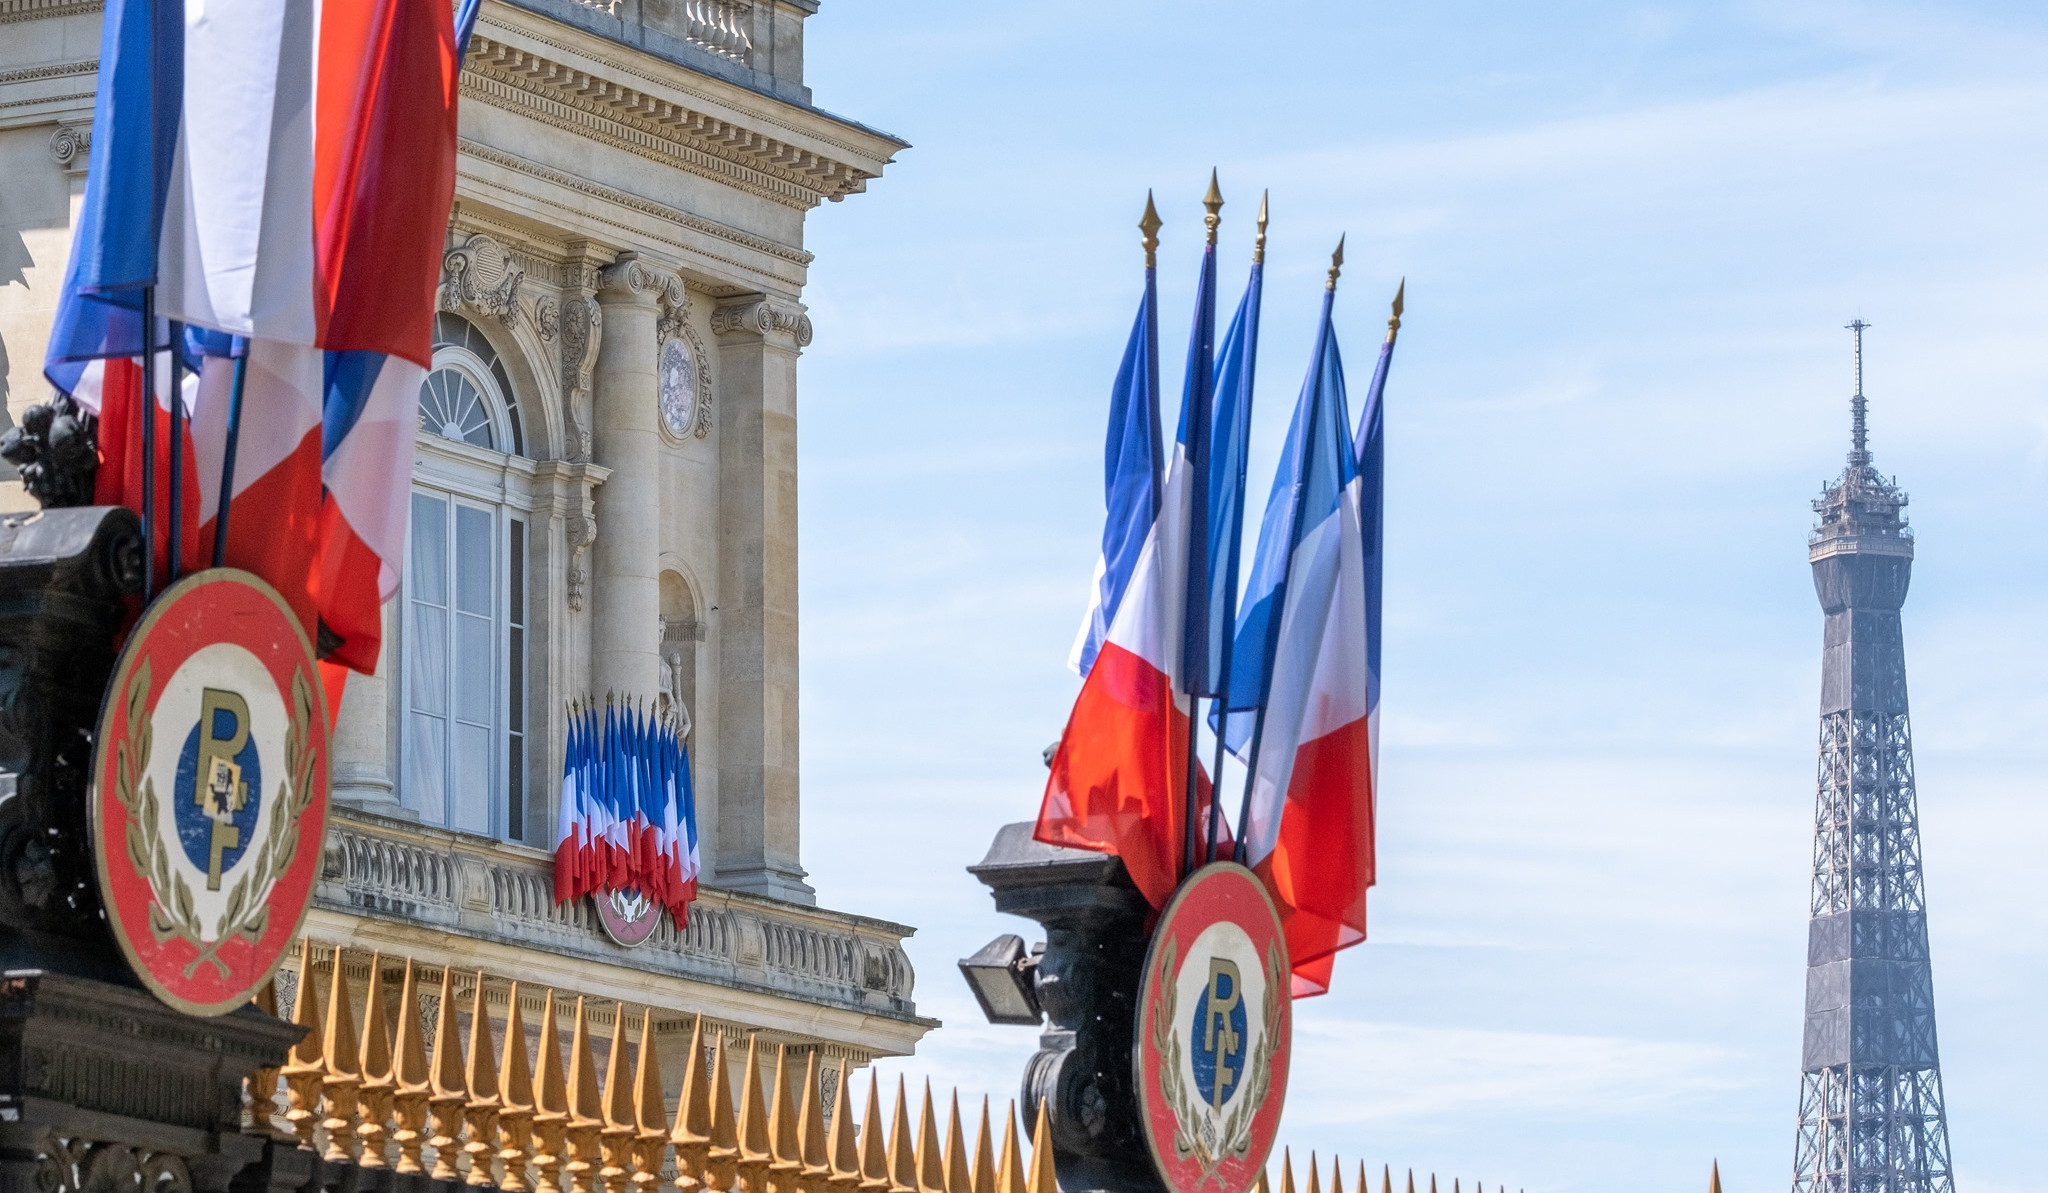 Ֆրանսիայի ԱԳ նախարարը մտահոգություն է հայտնել ադրբեջանական հռետորաբանության վերաբերյալ. խոսնակ